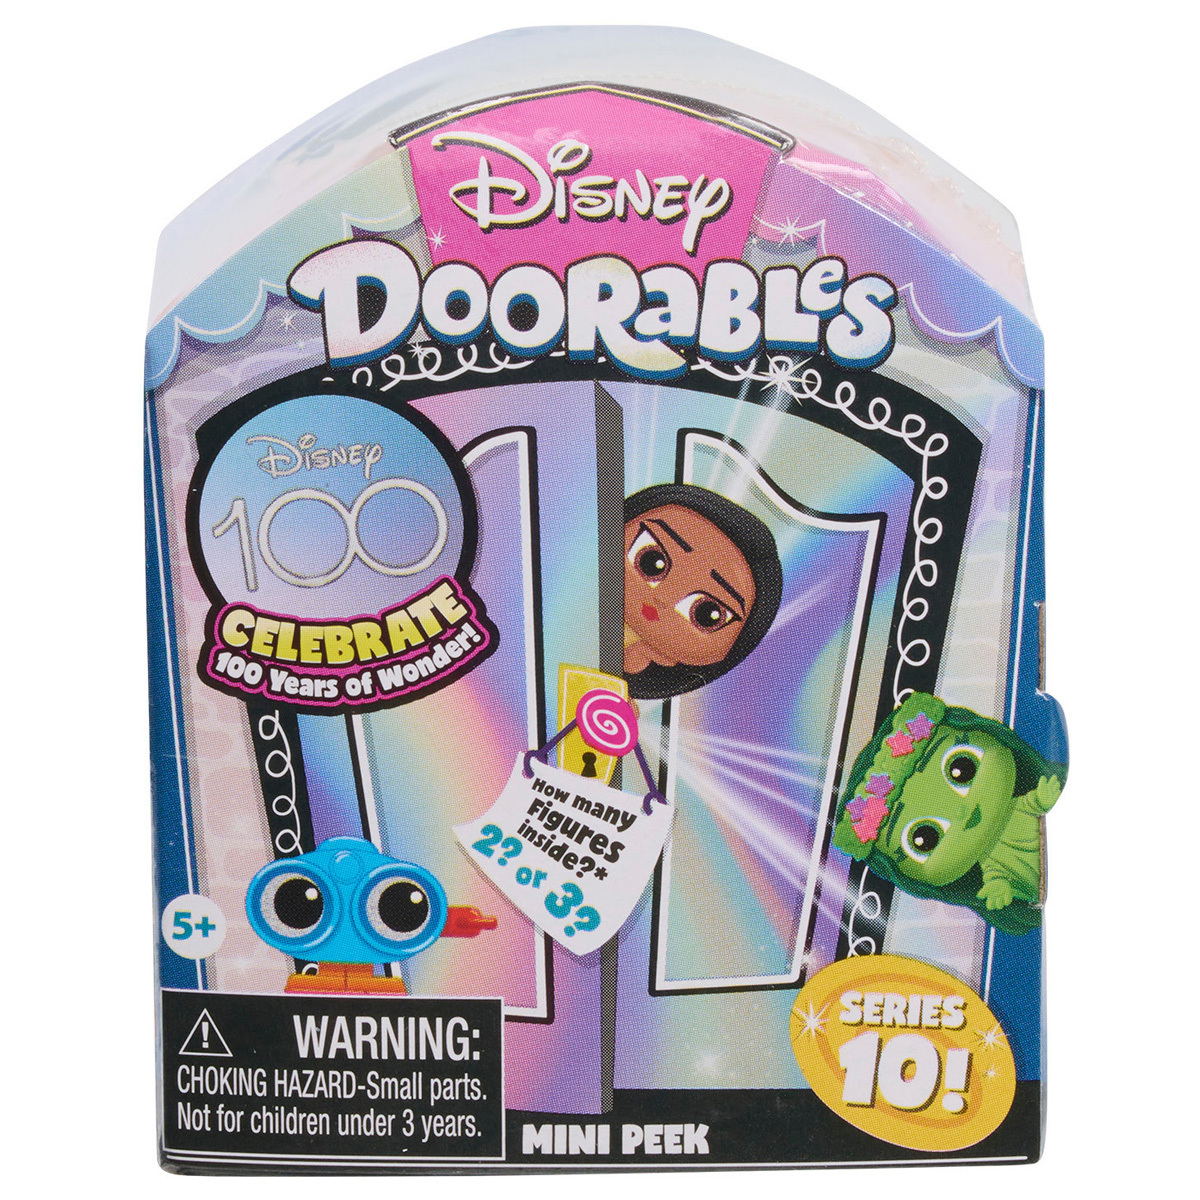 Disney Doorables Multi Peek Series 8 Mini Figures